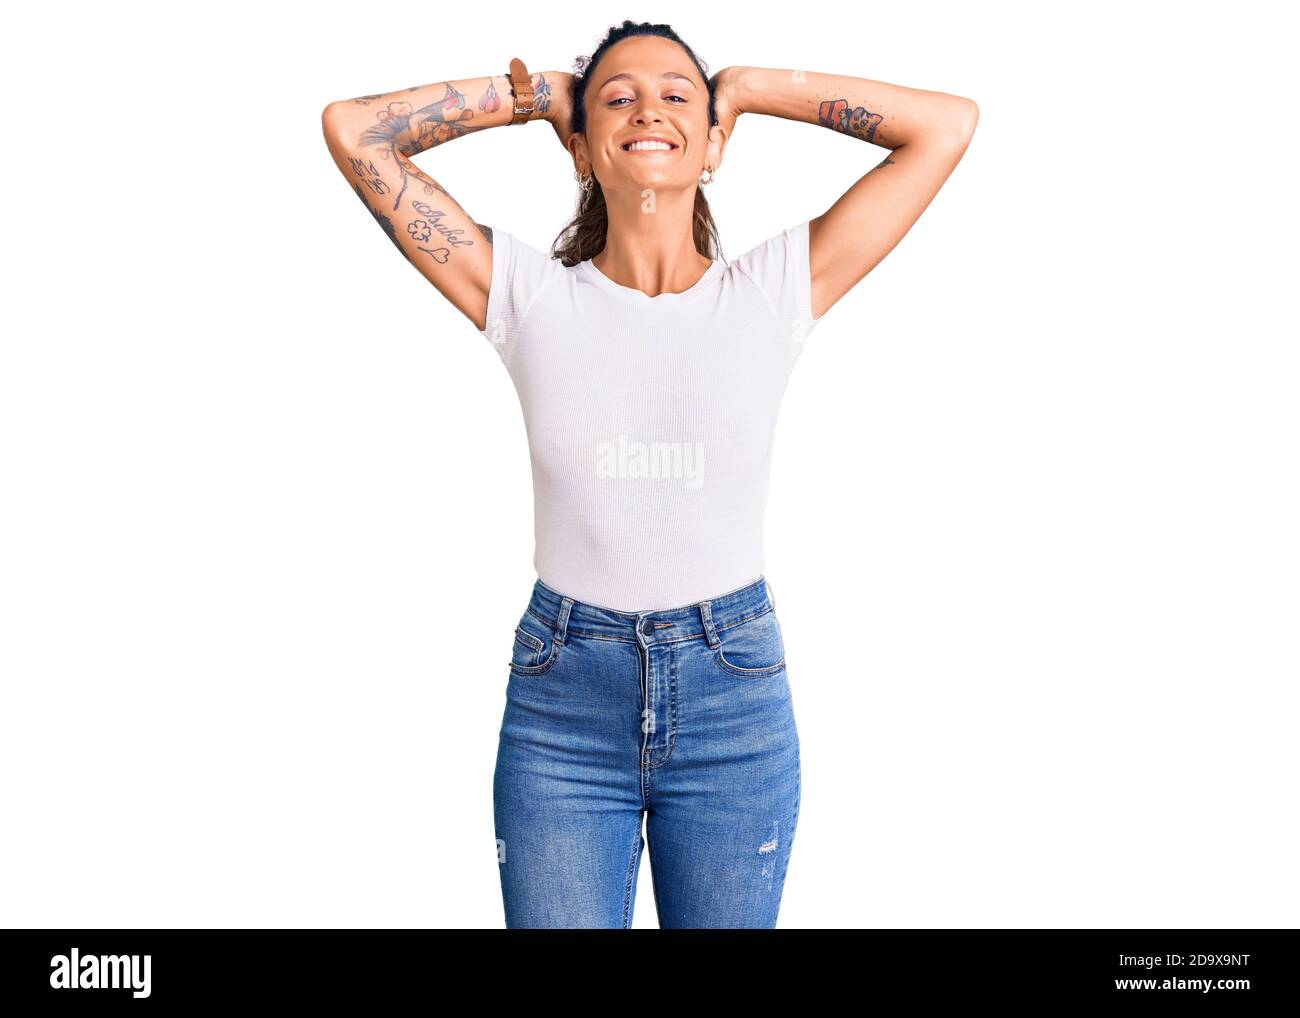 Junge hispanische Frau mit Tattoo tragen lässige weiße T-Shirt entspannen und Stretching, Arme und Hände hinter Kopf und Hals lächeln glücklich Stockfoto